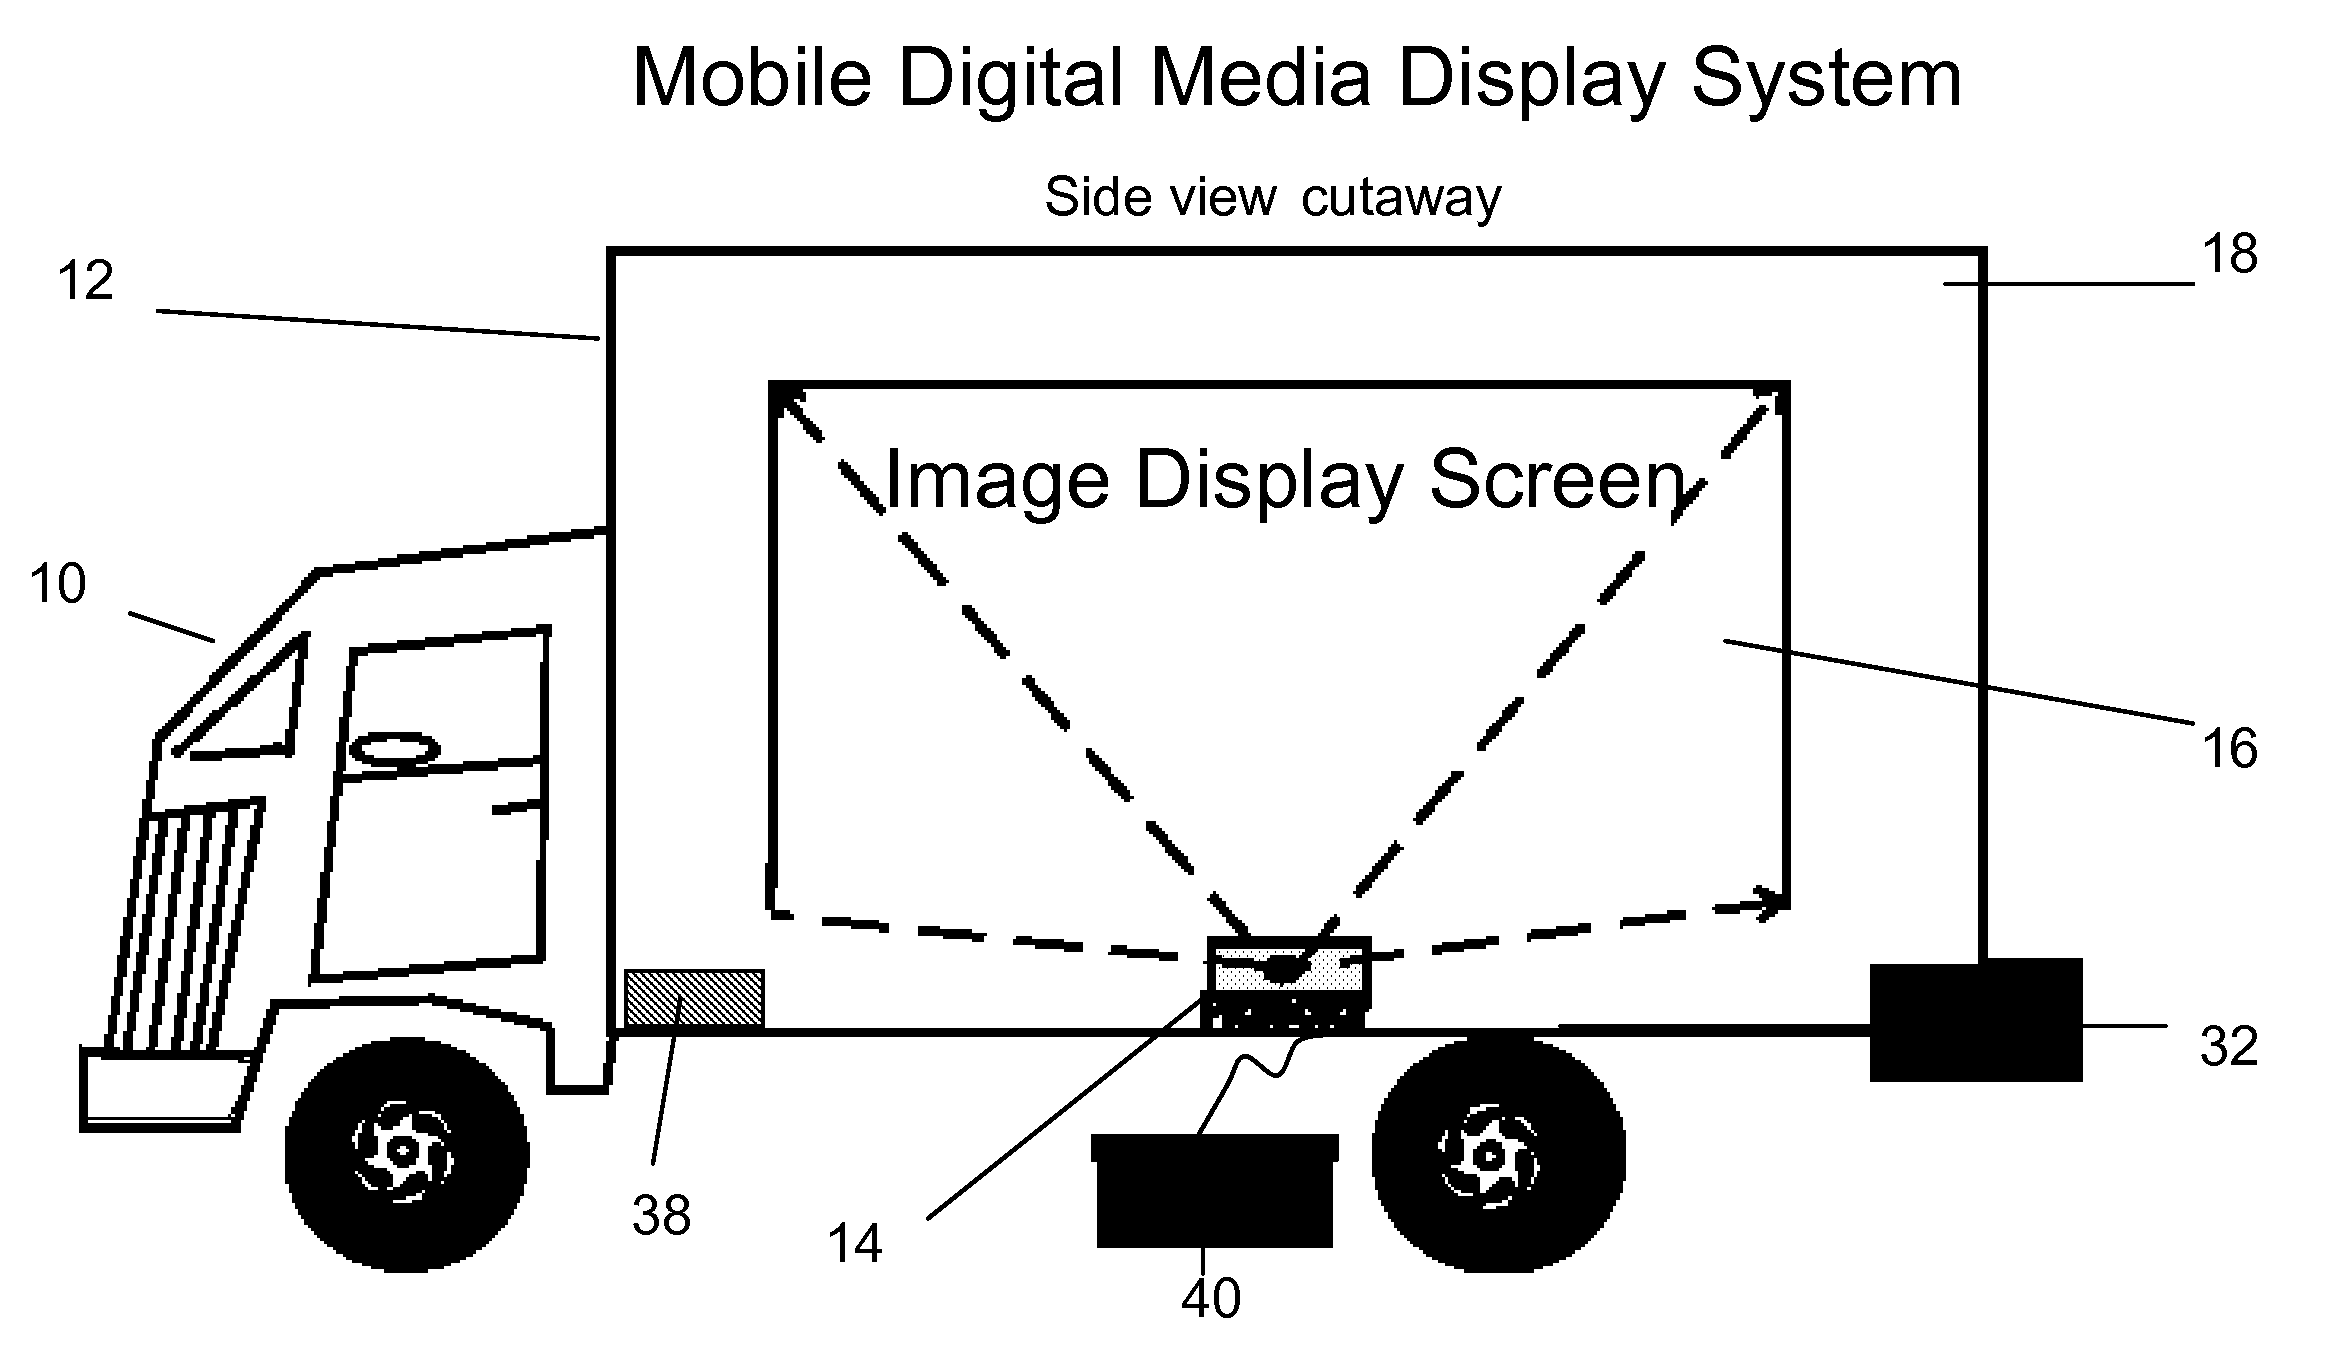 Mobile Digital Media Display System